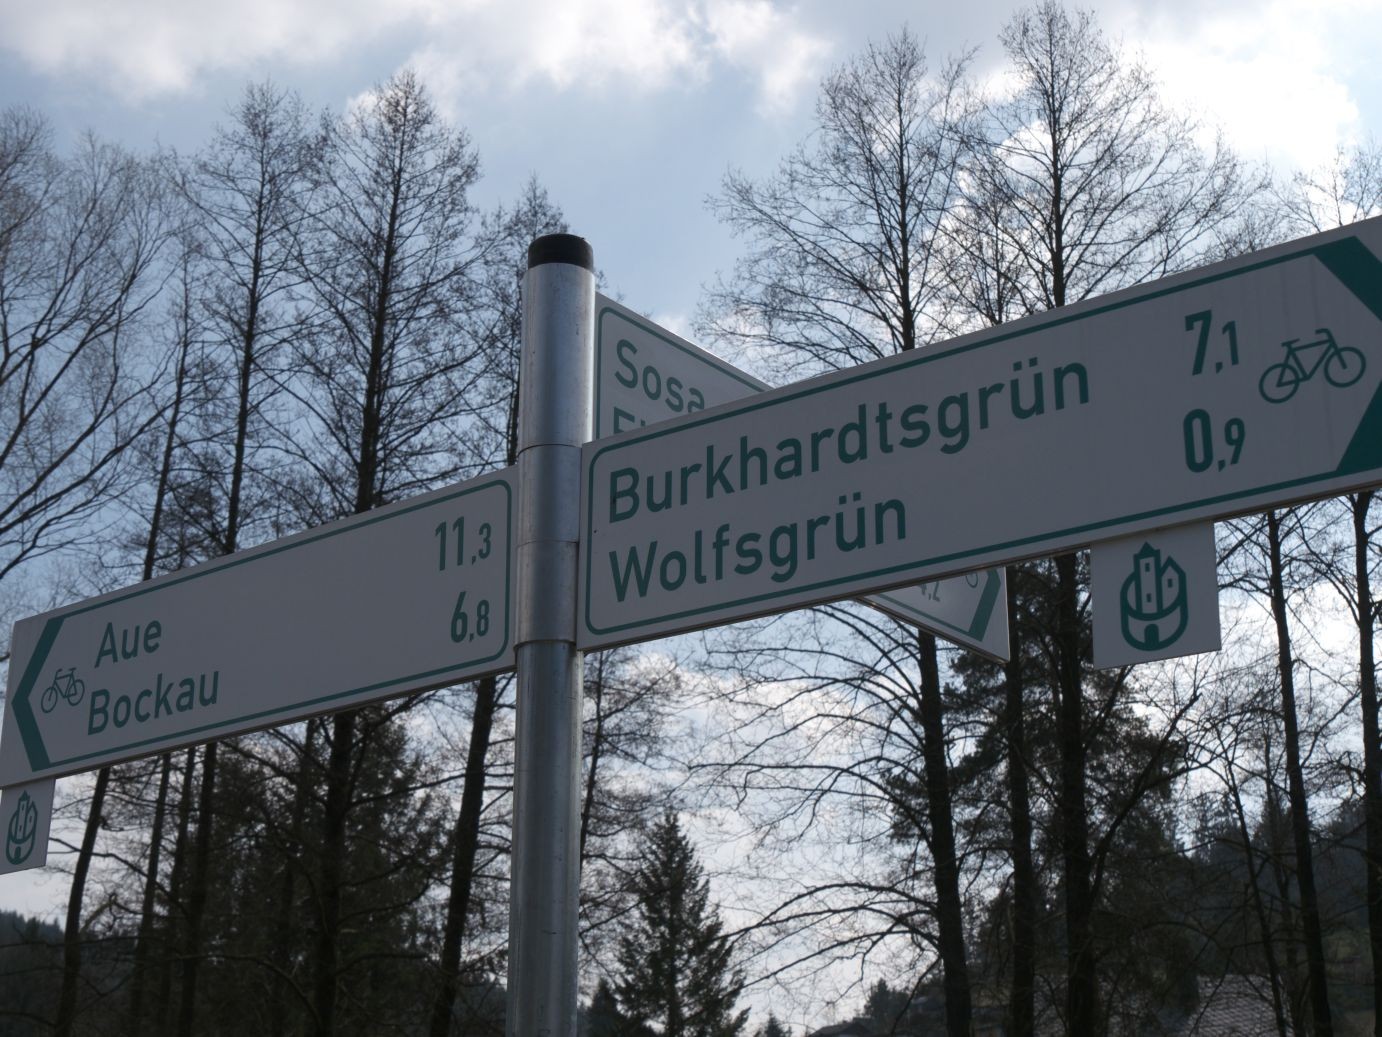 die Schilder geben einen Hinweis auf die Karlsroute, der Verbindung zwischen Egerradweg und Mulderadweg, die Ende 2014 fertigestellt sein soll